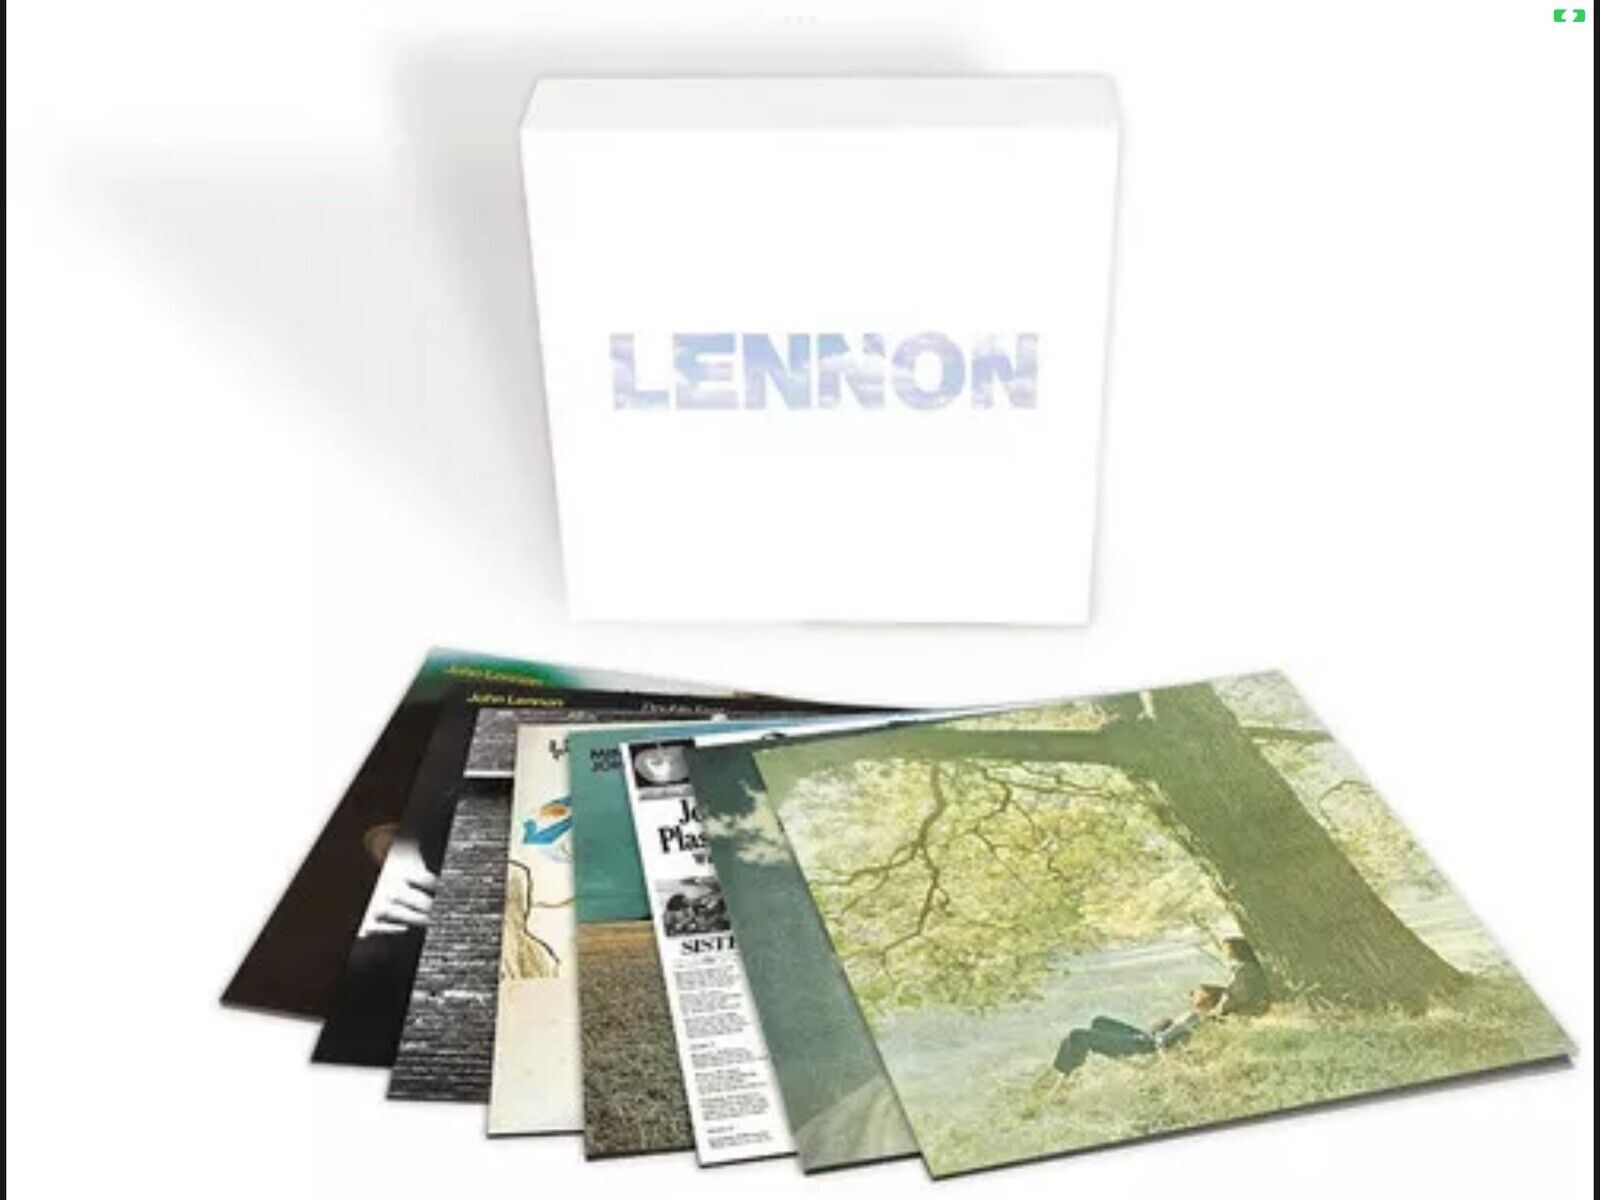 John Lennon - Lennon [Vinyl 9 LP Box Set] New & Sealed